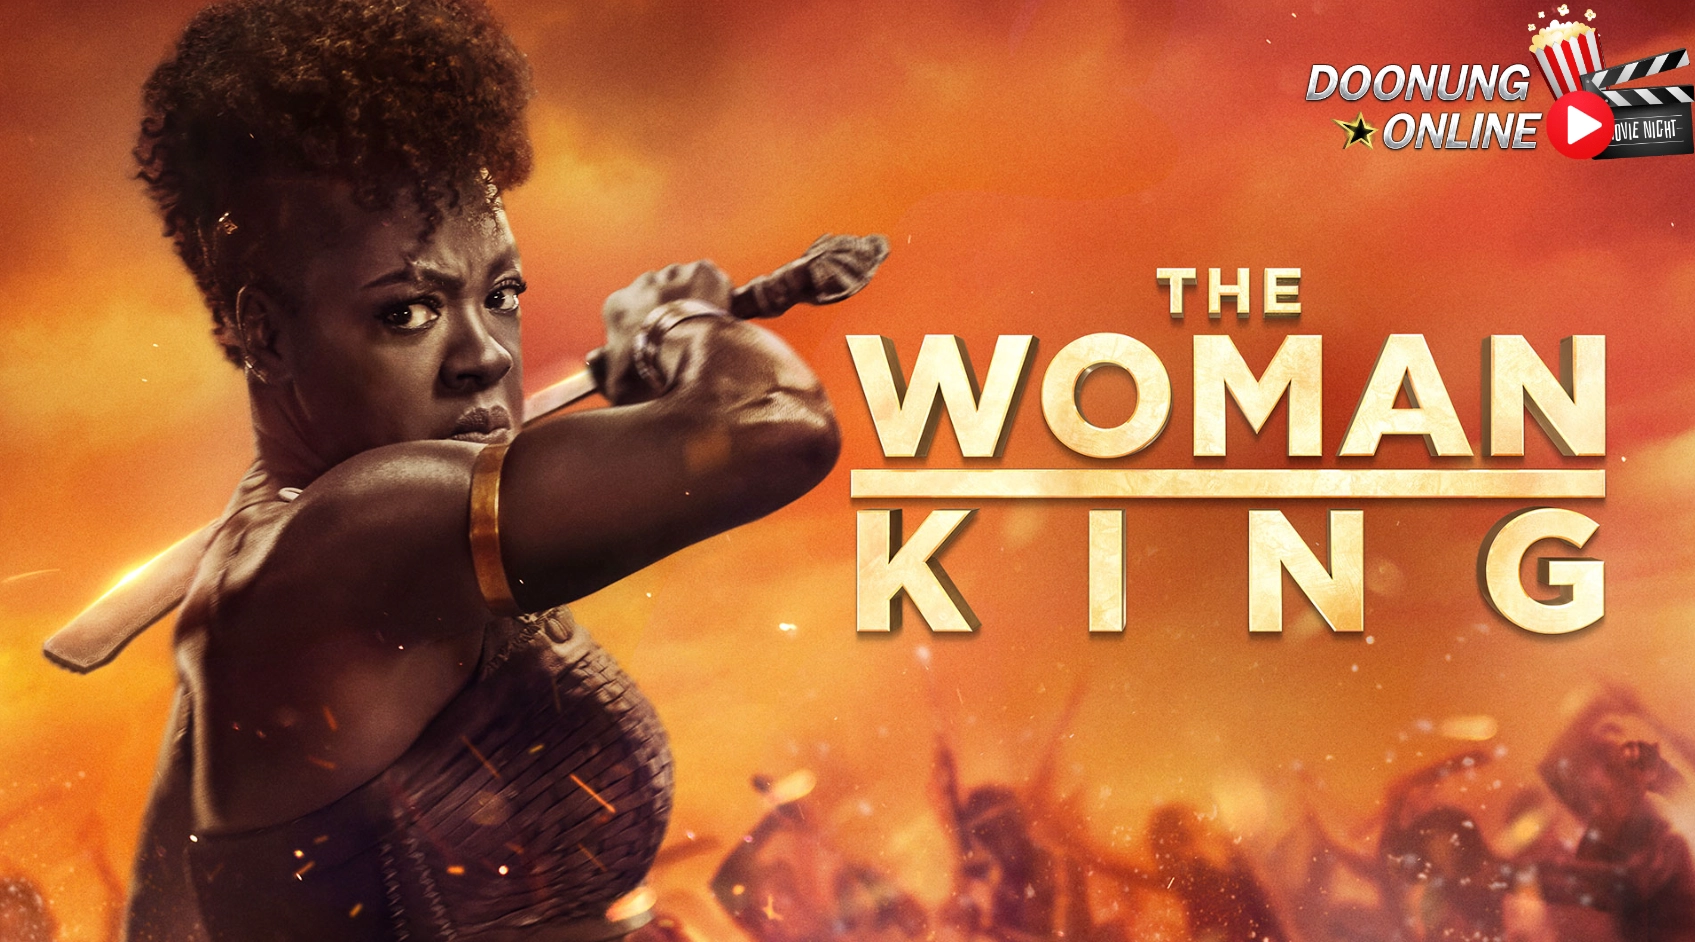 รีวิวหนัง The Woman King มหาศึกวีรสตรีเหล็ก 2022 - มหากาพย์แอ็คชั่น